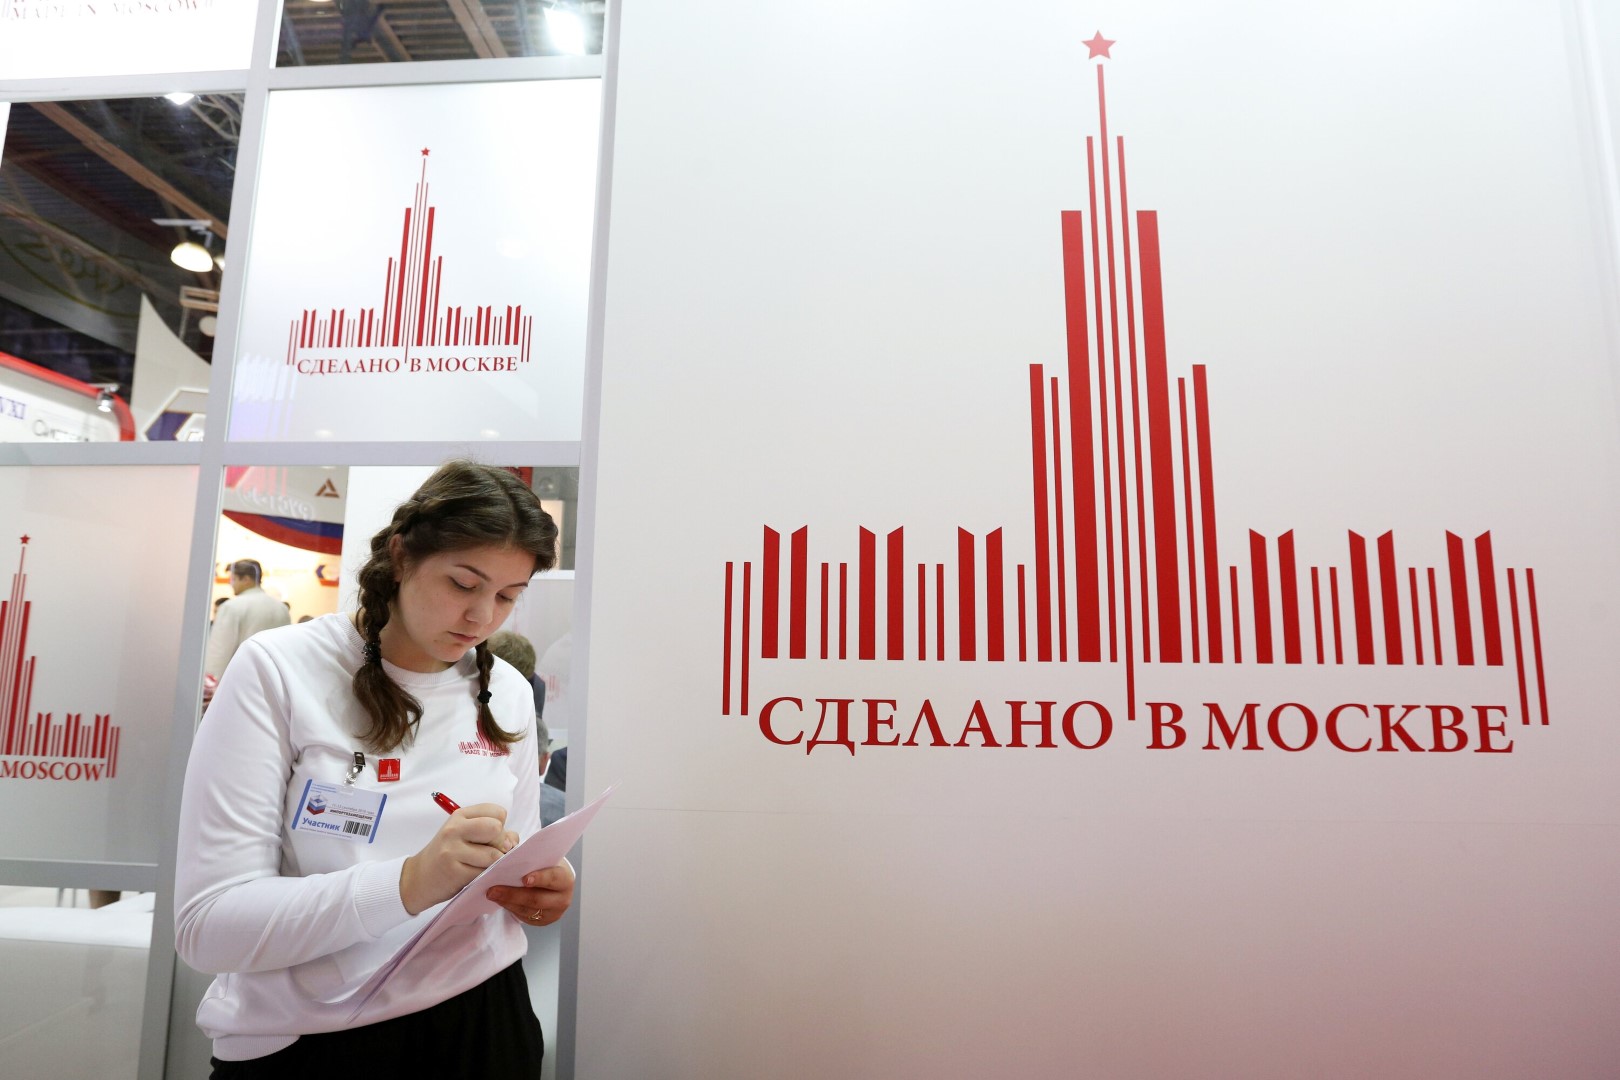 Более 25 тысяч товаров представлено под брендом «Сделано в Москве»